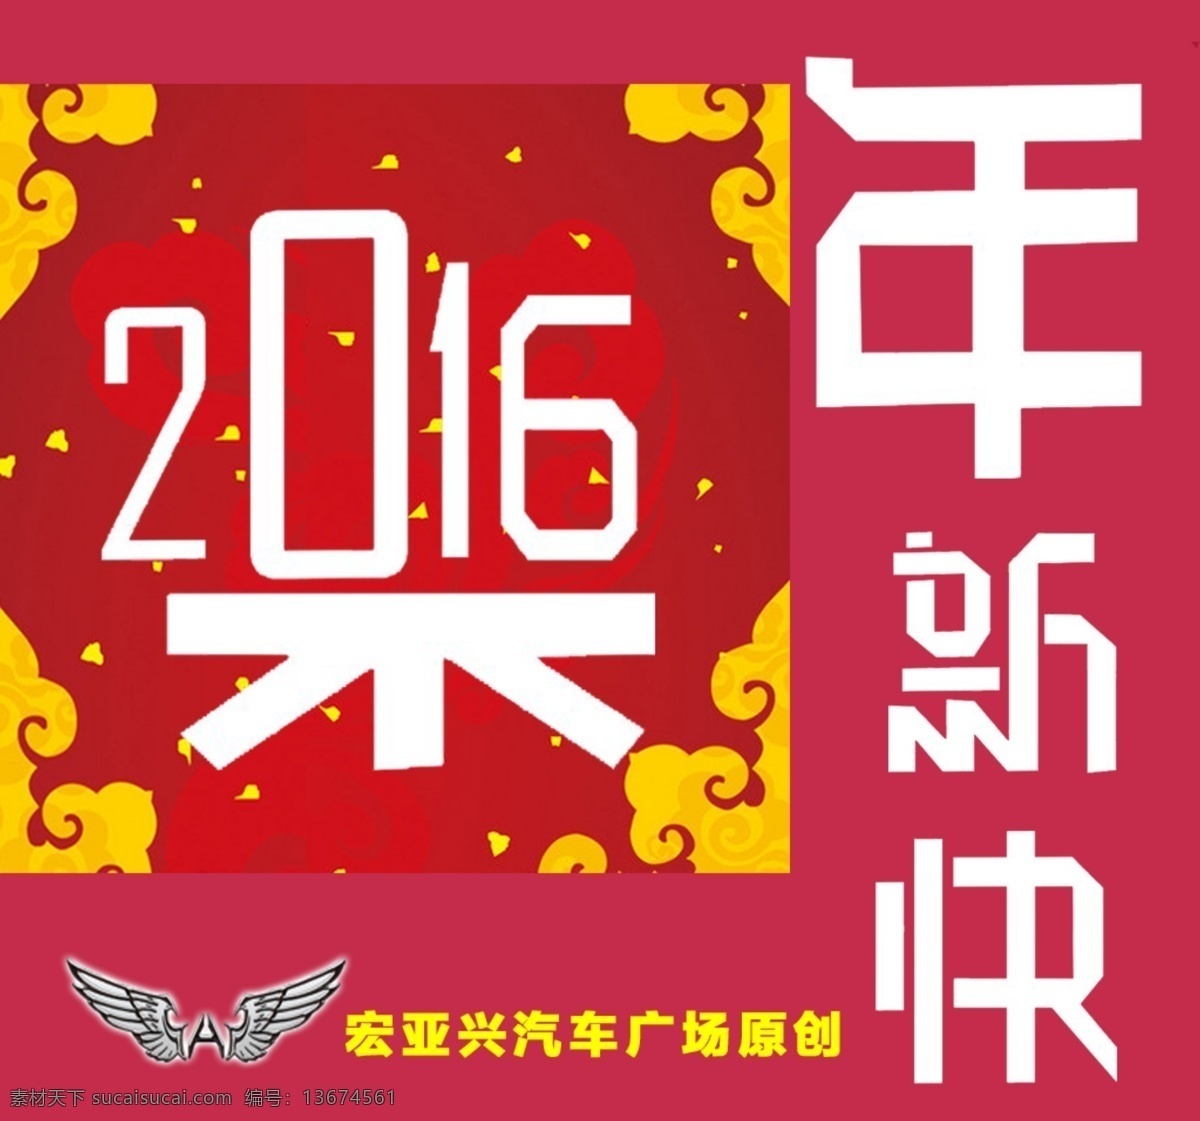 微 信 封面 2016 新年 快乐 猴年 微信 新 年 快 乐 红色